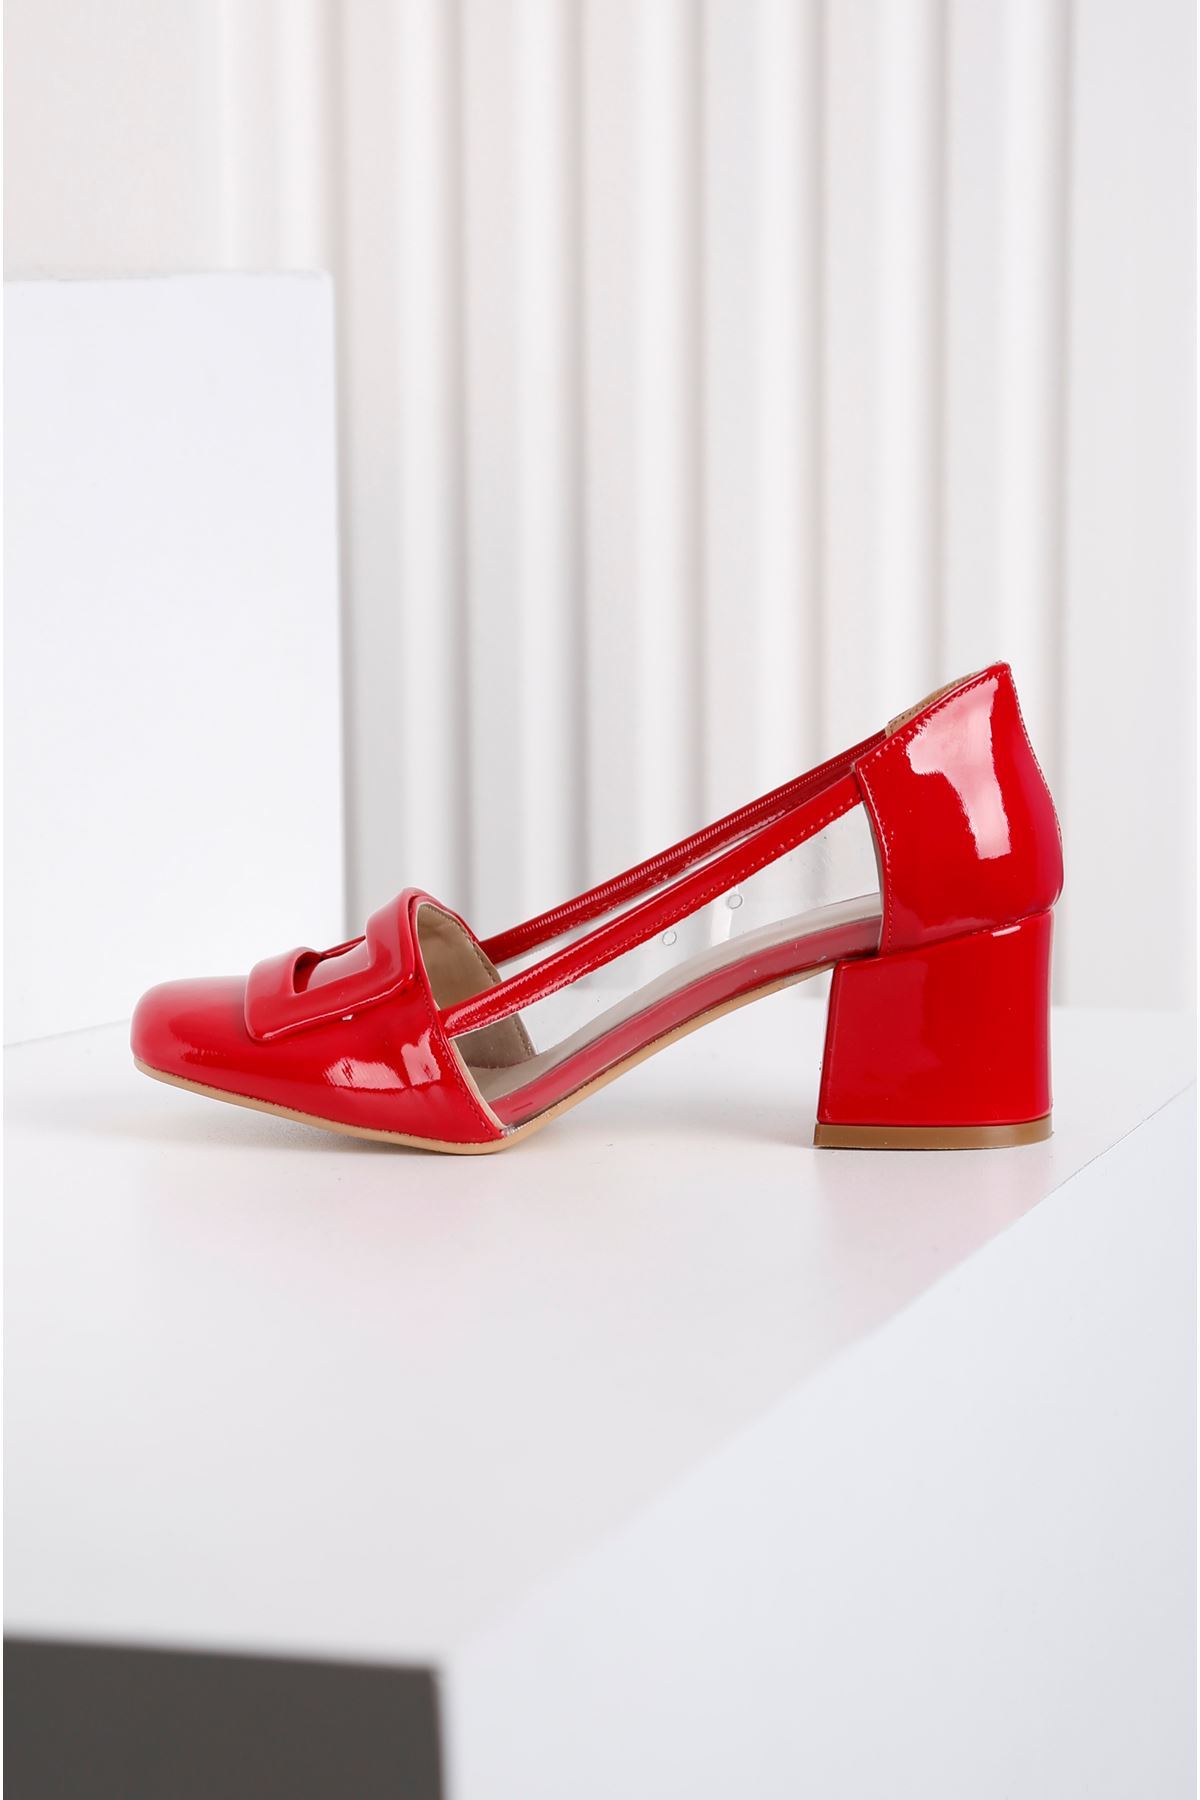 Barbie Topuklu Kırmızı Şefaf Ayakkabı